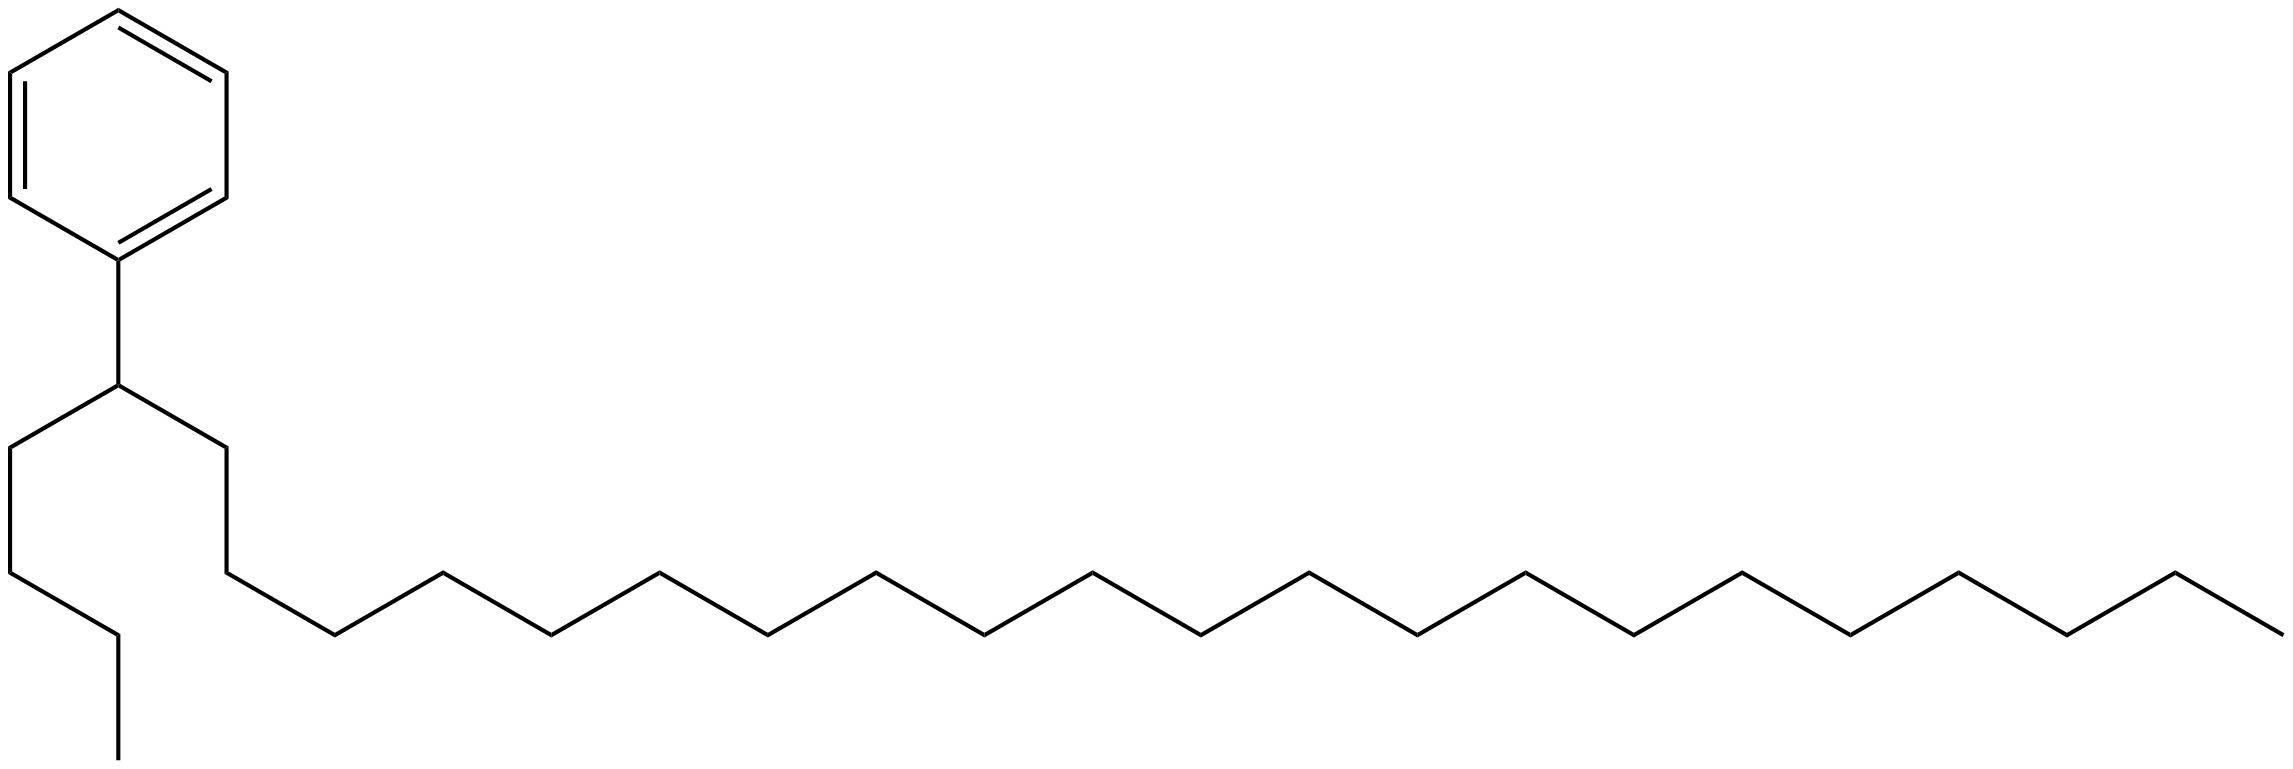 Image of (1-butyldocosyl)benzene